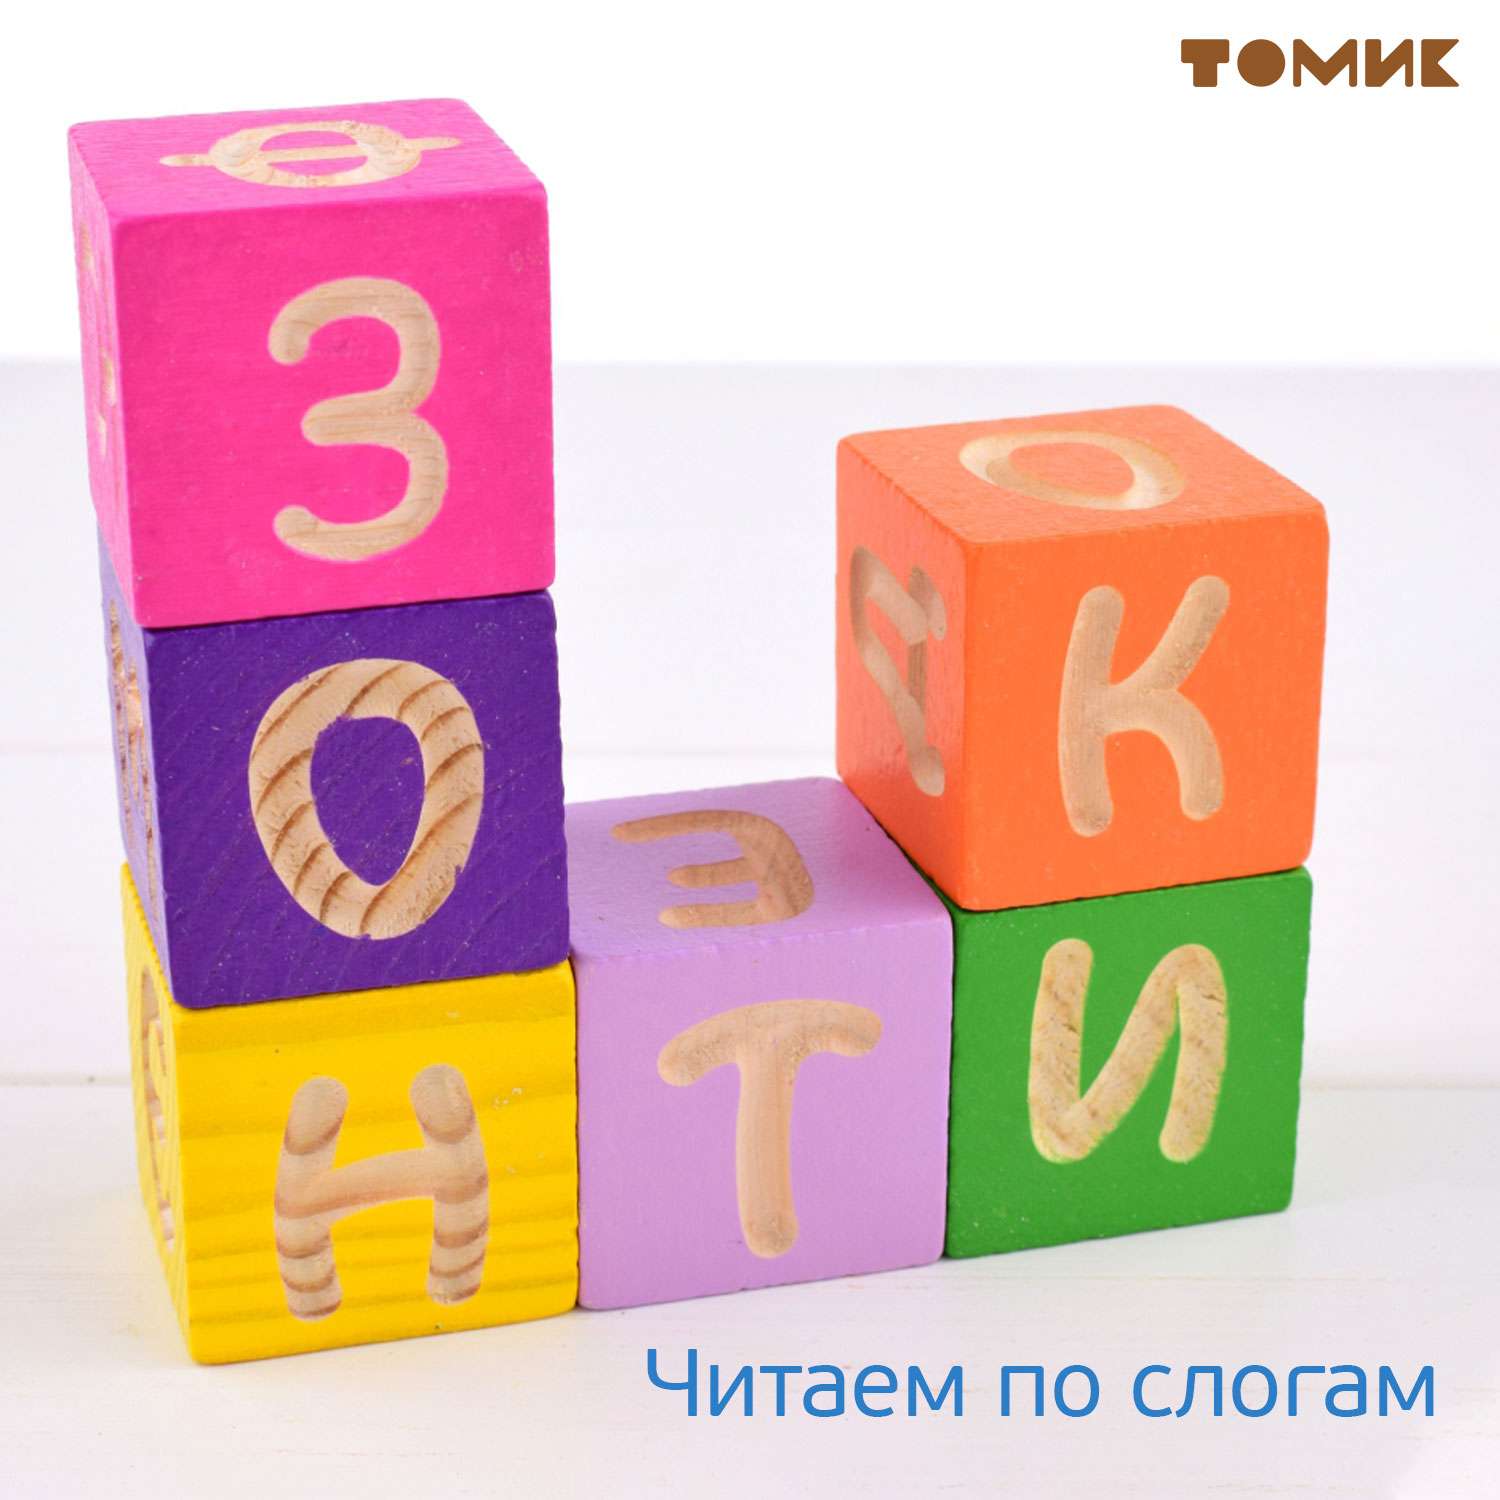 Кубики Томик Веселая азбука 12 штук 1111-4 - фото 9